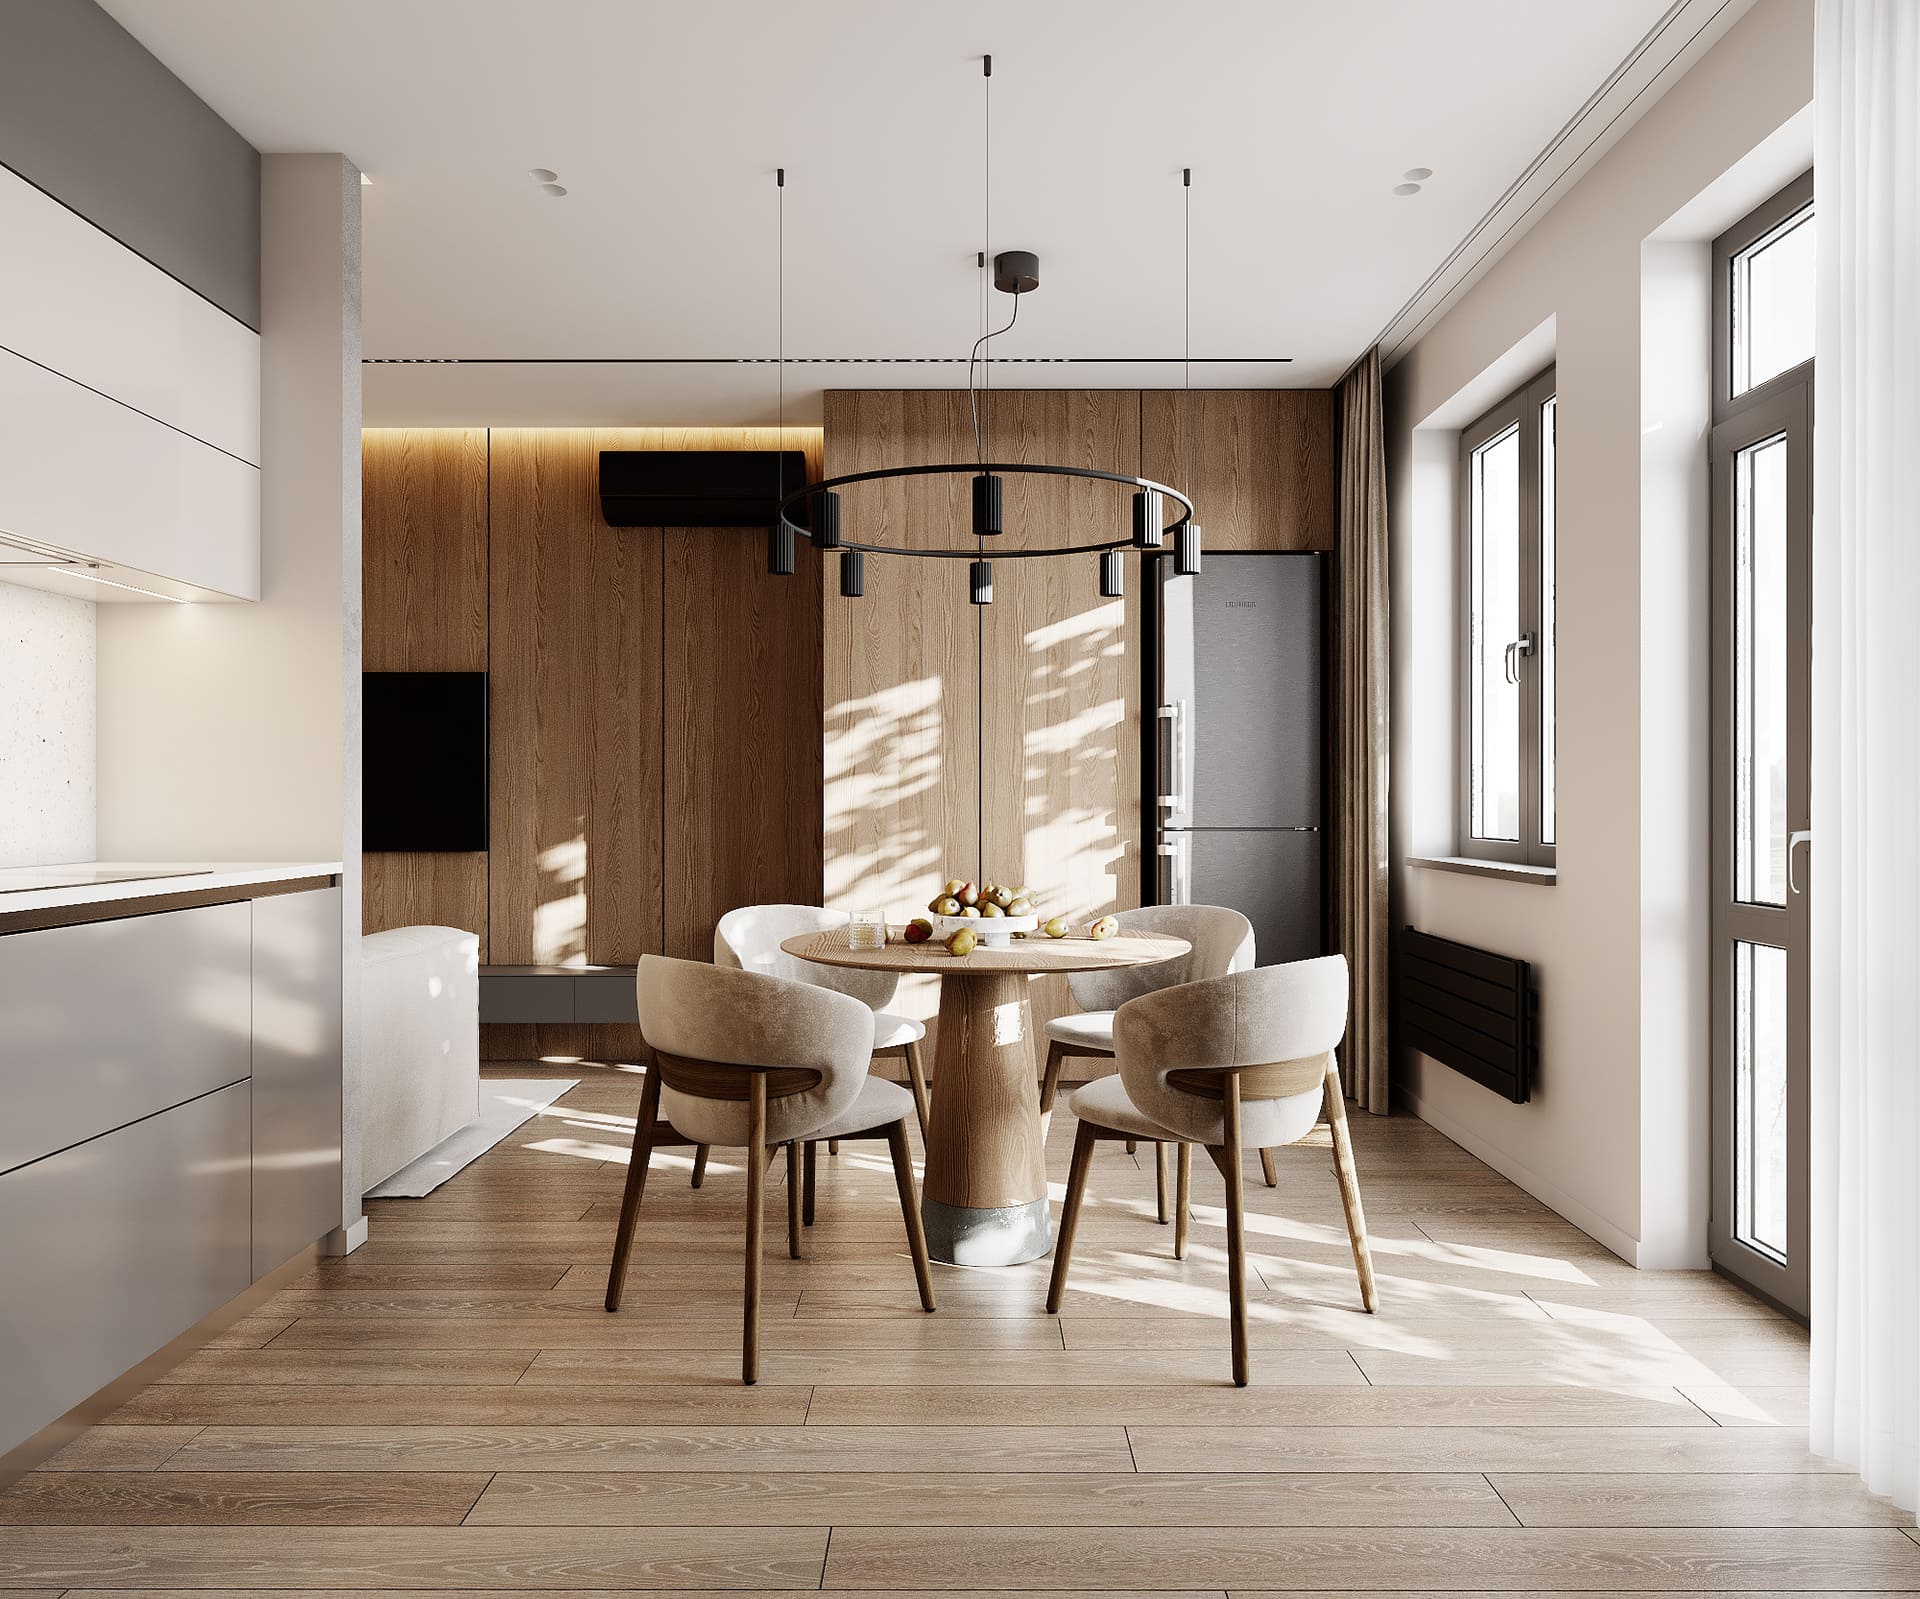 Лаконічна квартира у стилі мінімалізм, кухня-вітальня, фото 17